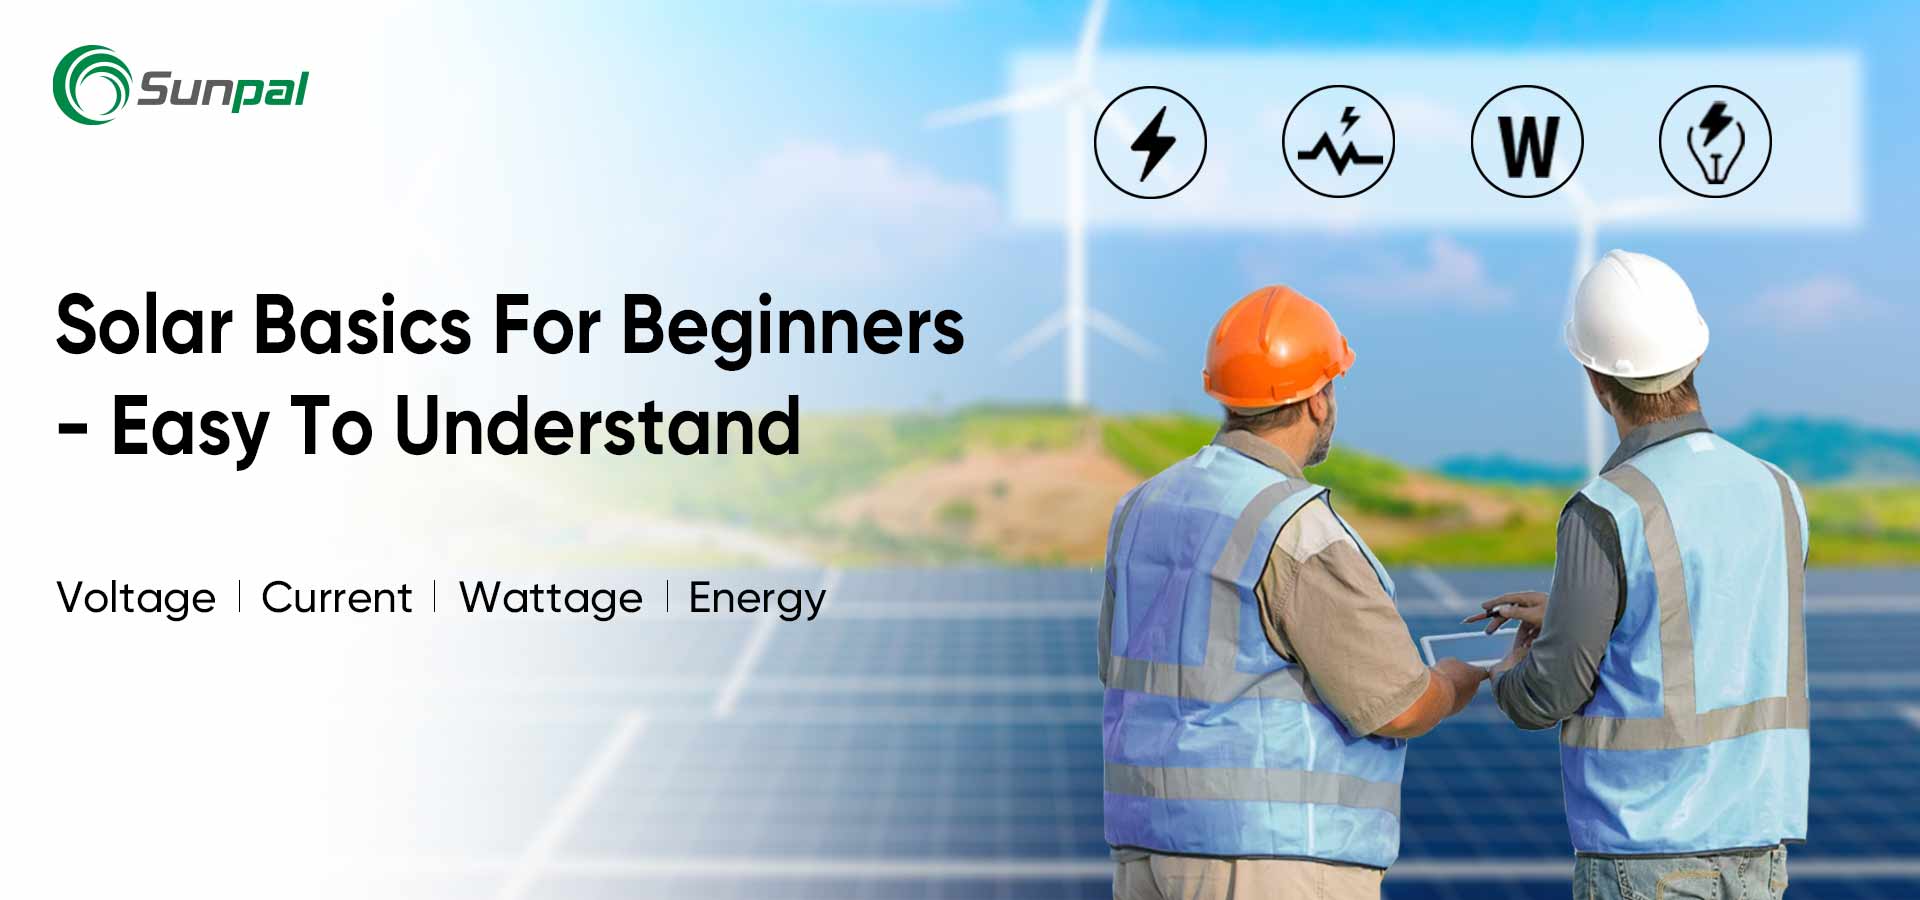 Bases solaires pour débutants : tension principale/courant/puissance/énergie